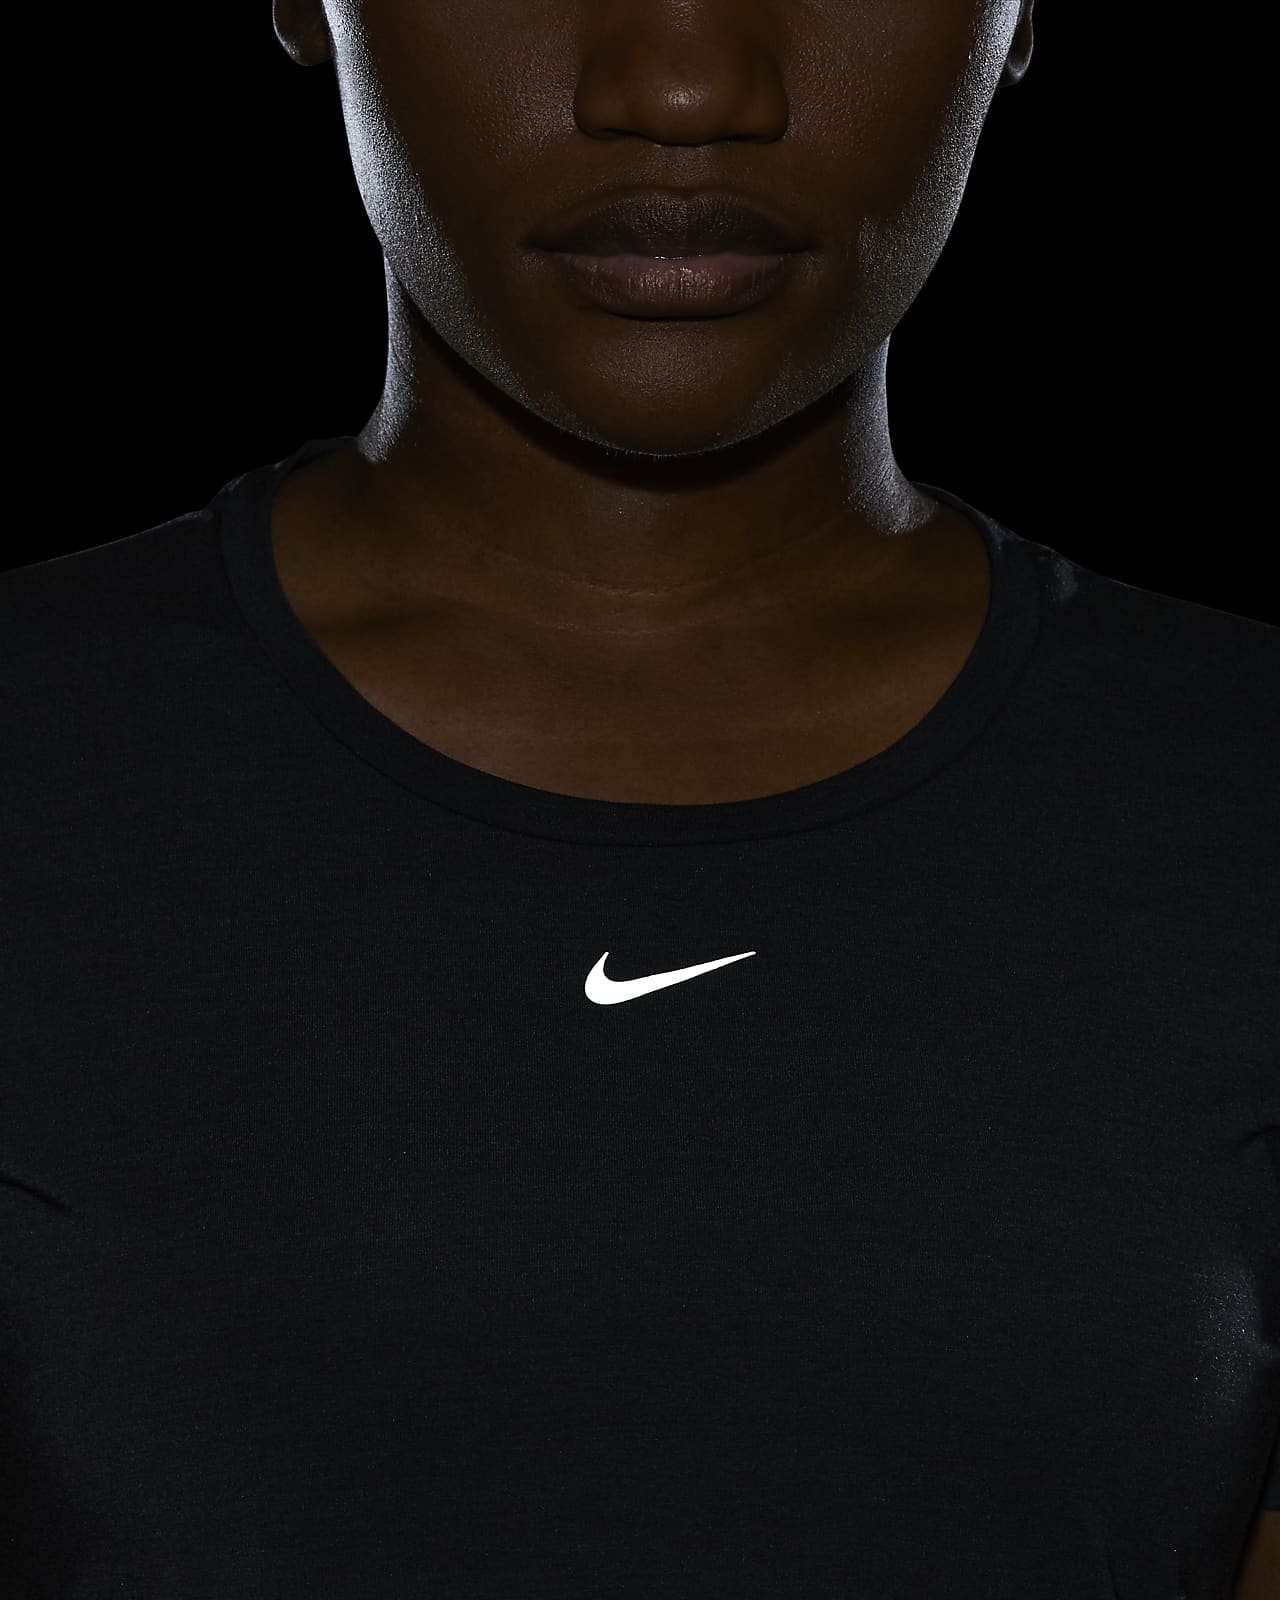 Nike Nike Dri-fit One Luxe Women's Black/metallic Gold